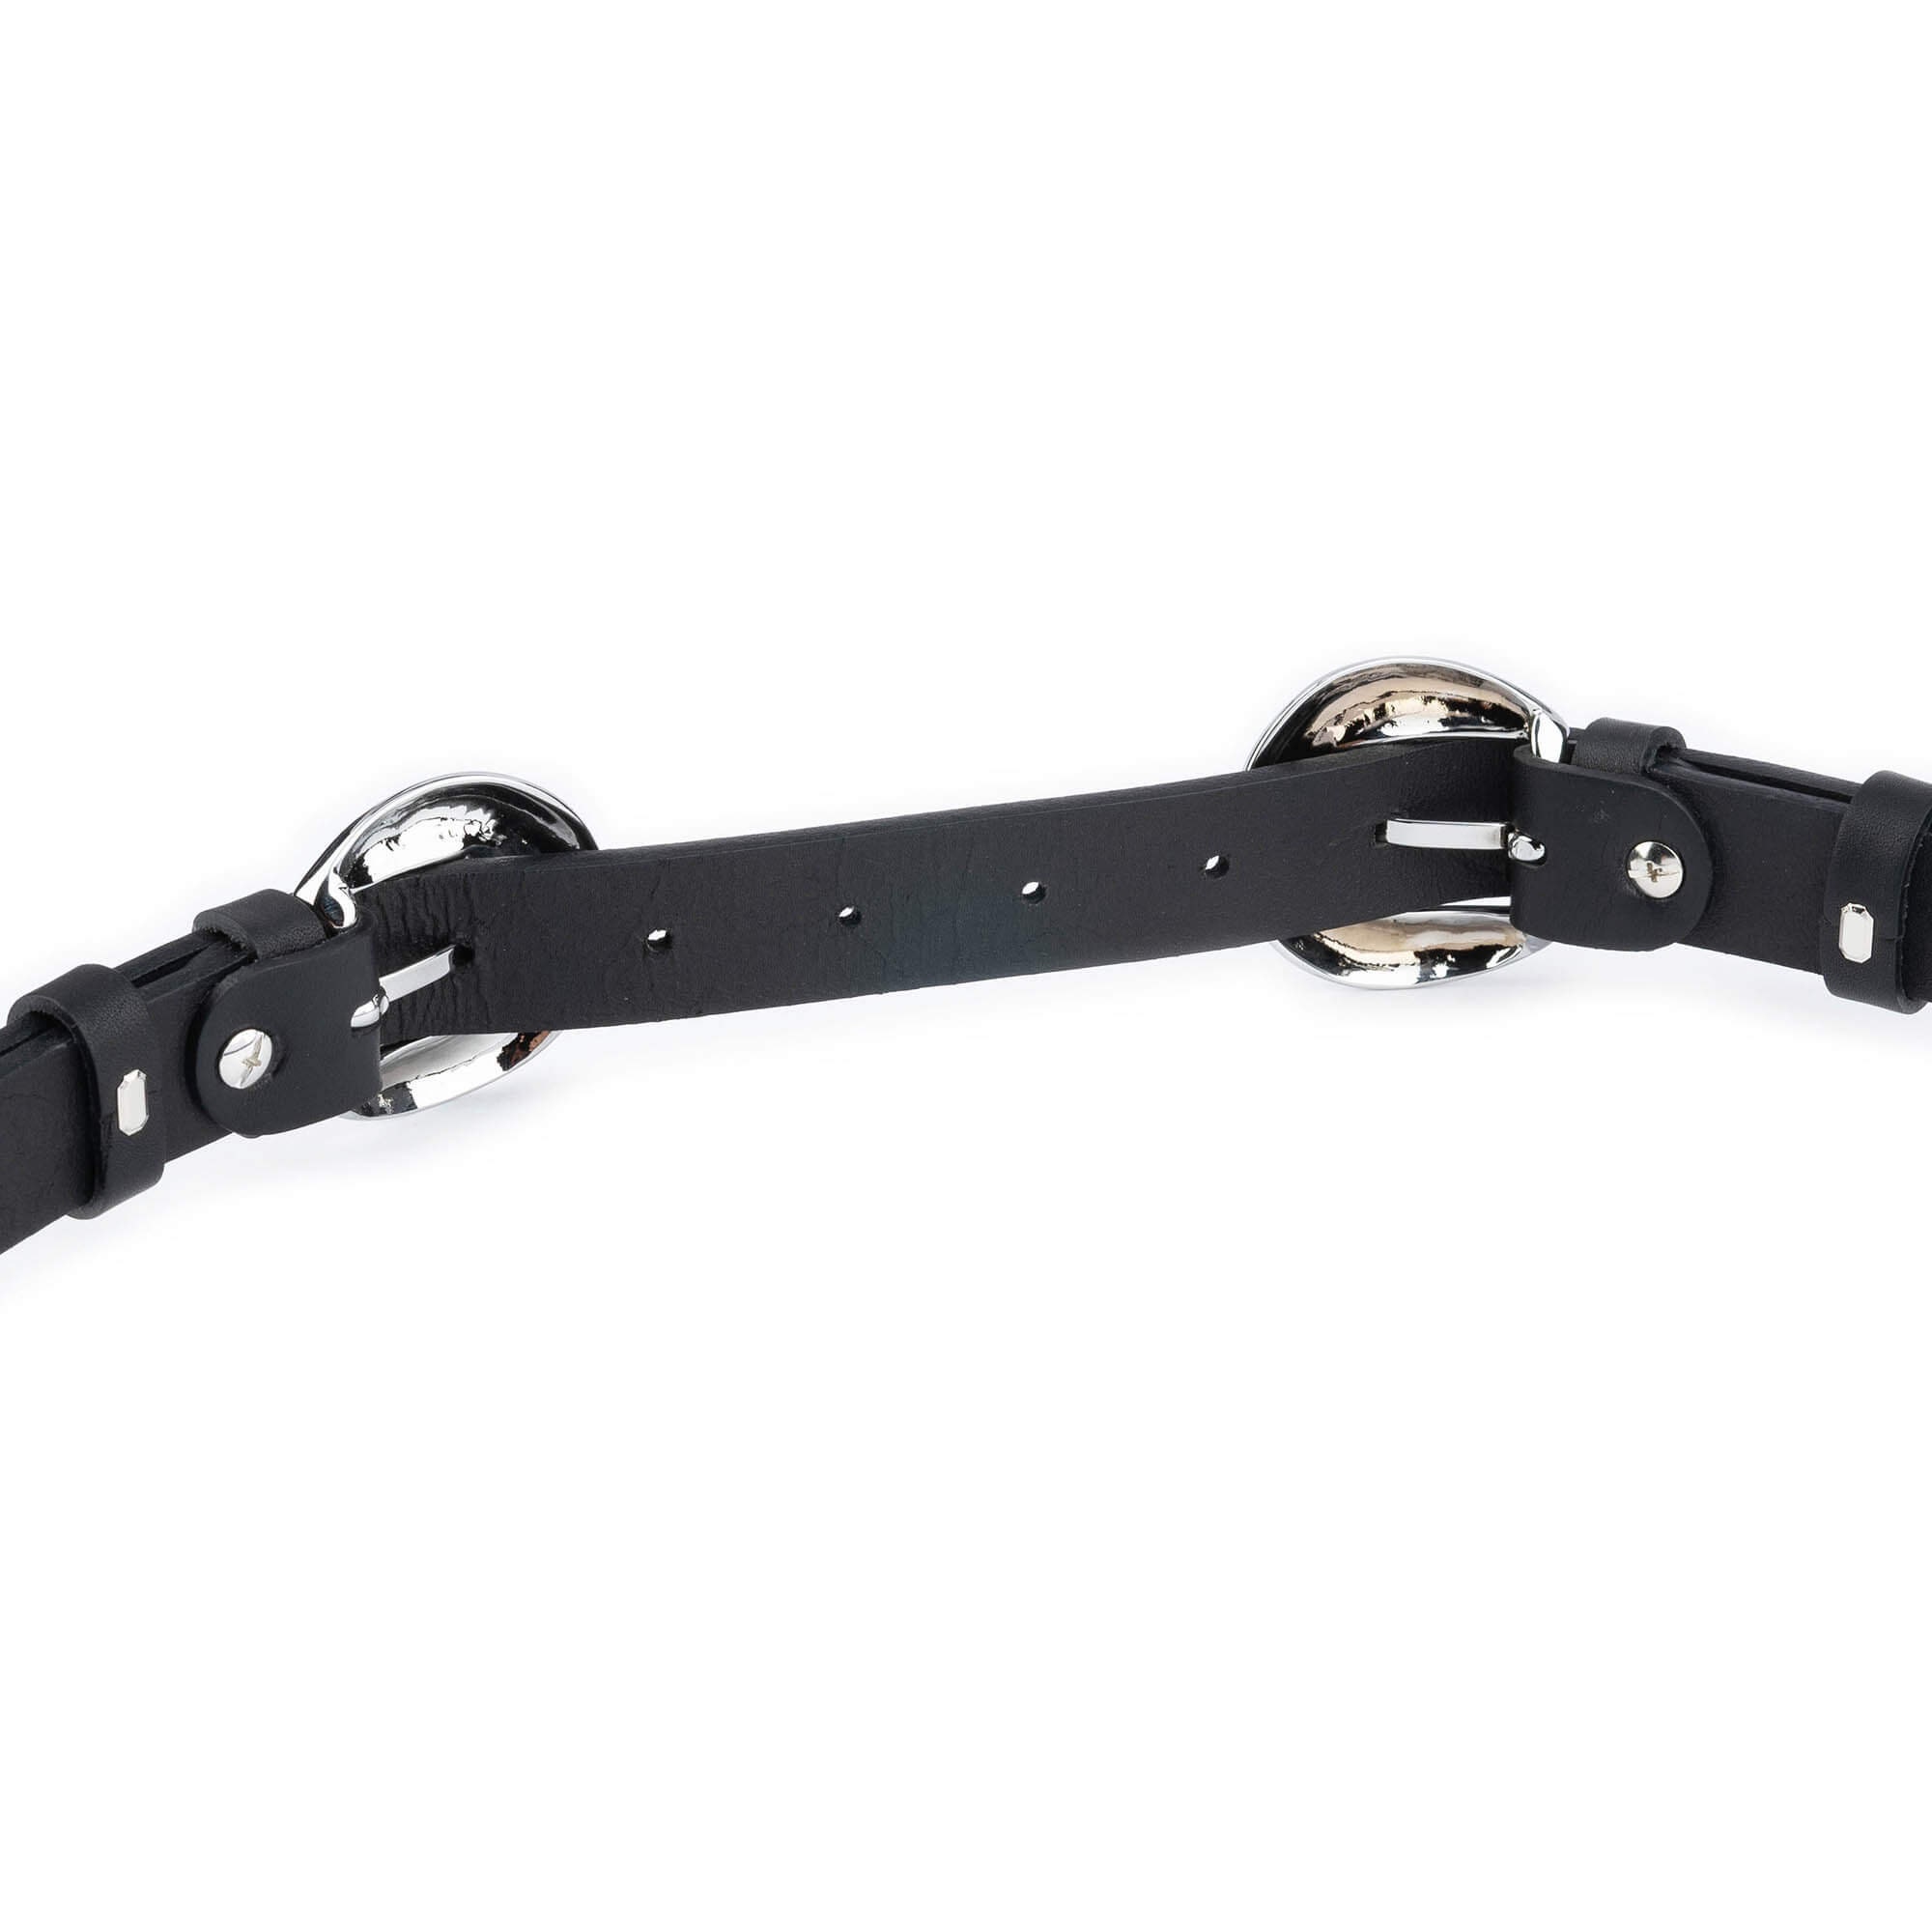 Cinturones de cuer mujer, correa de cinturón 2 hebillas de ancho de 2.4  Plata - Oro Baoblaze Cinturón de hebilla doble de mujer